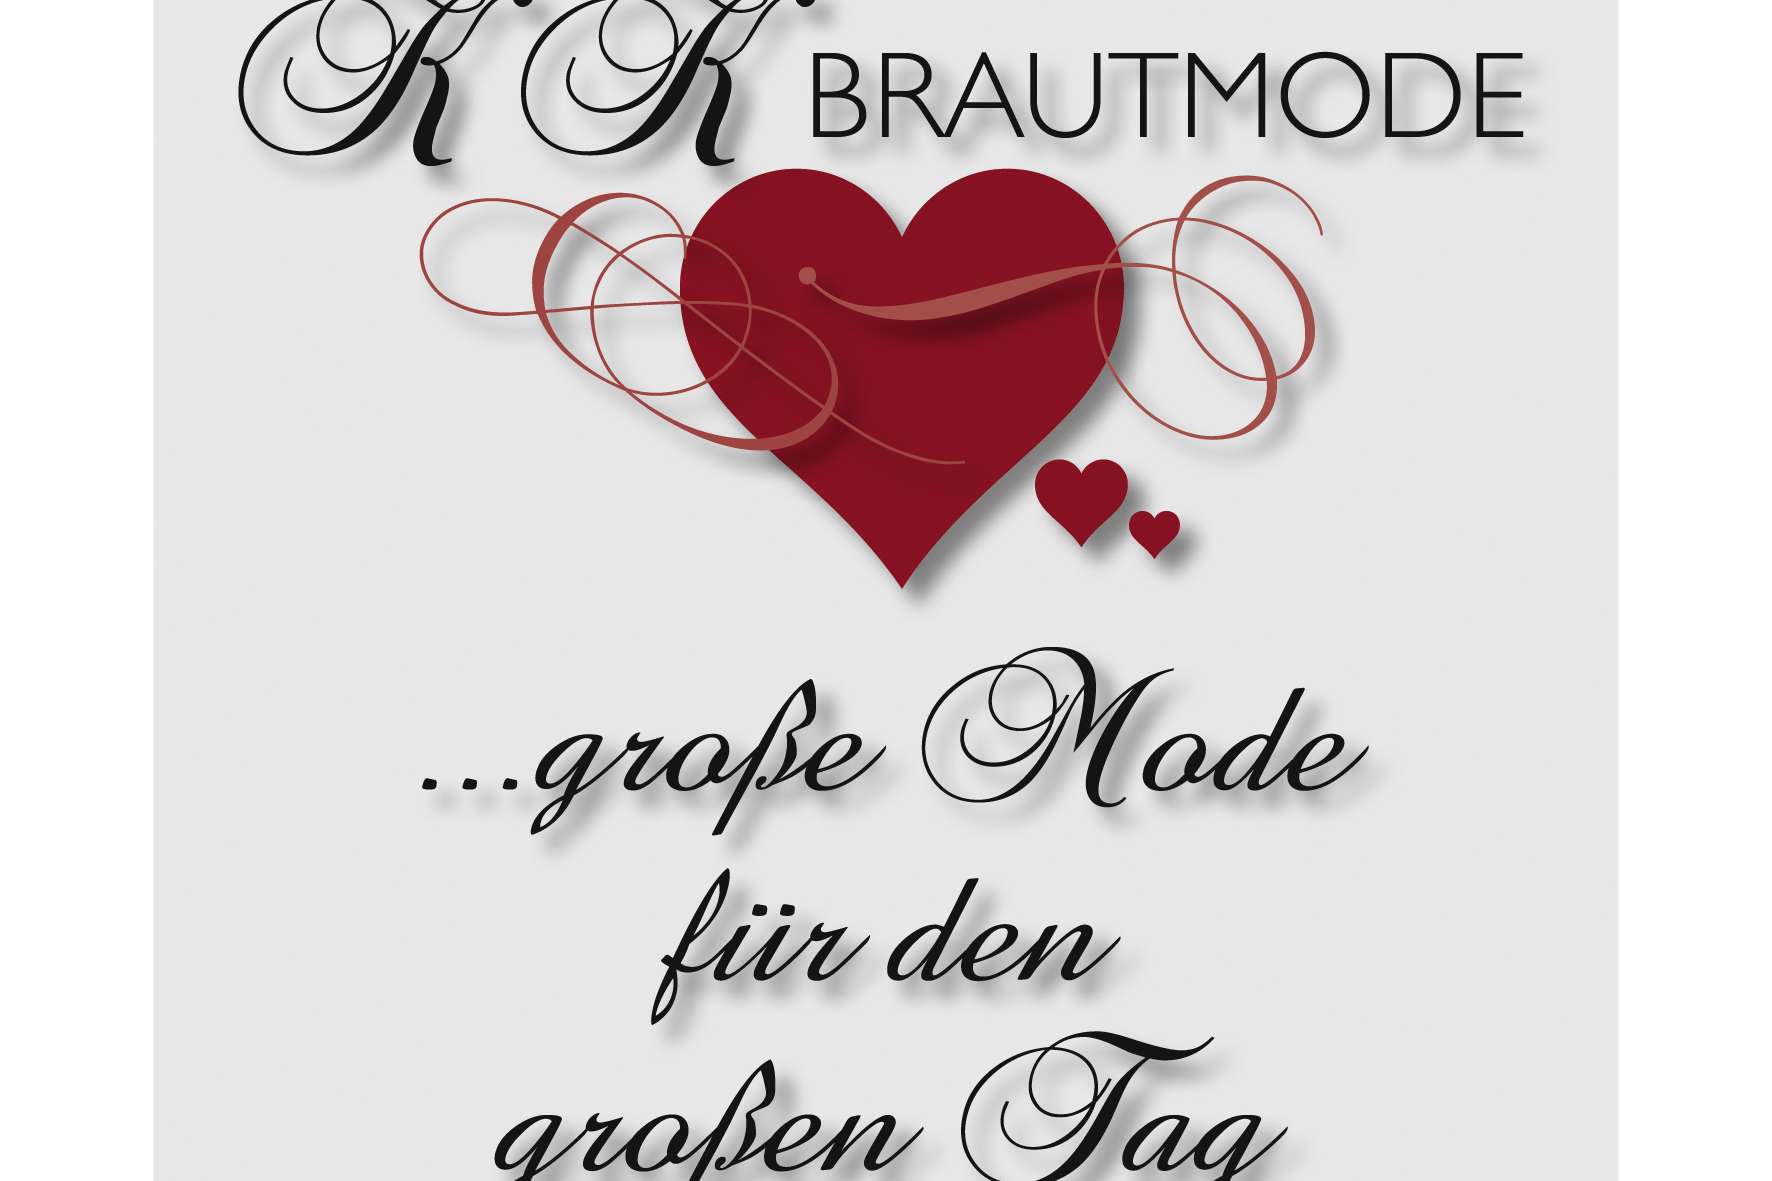 KK Brautmode Mode für großen Tag - Brautmode in Florstadt